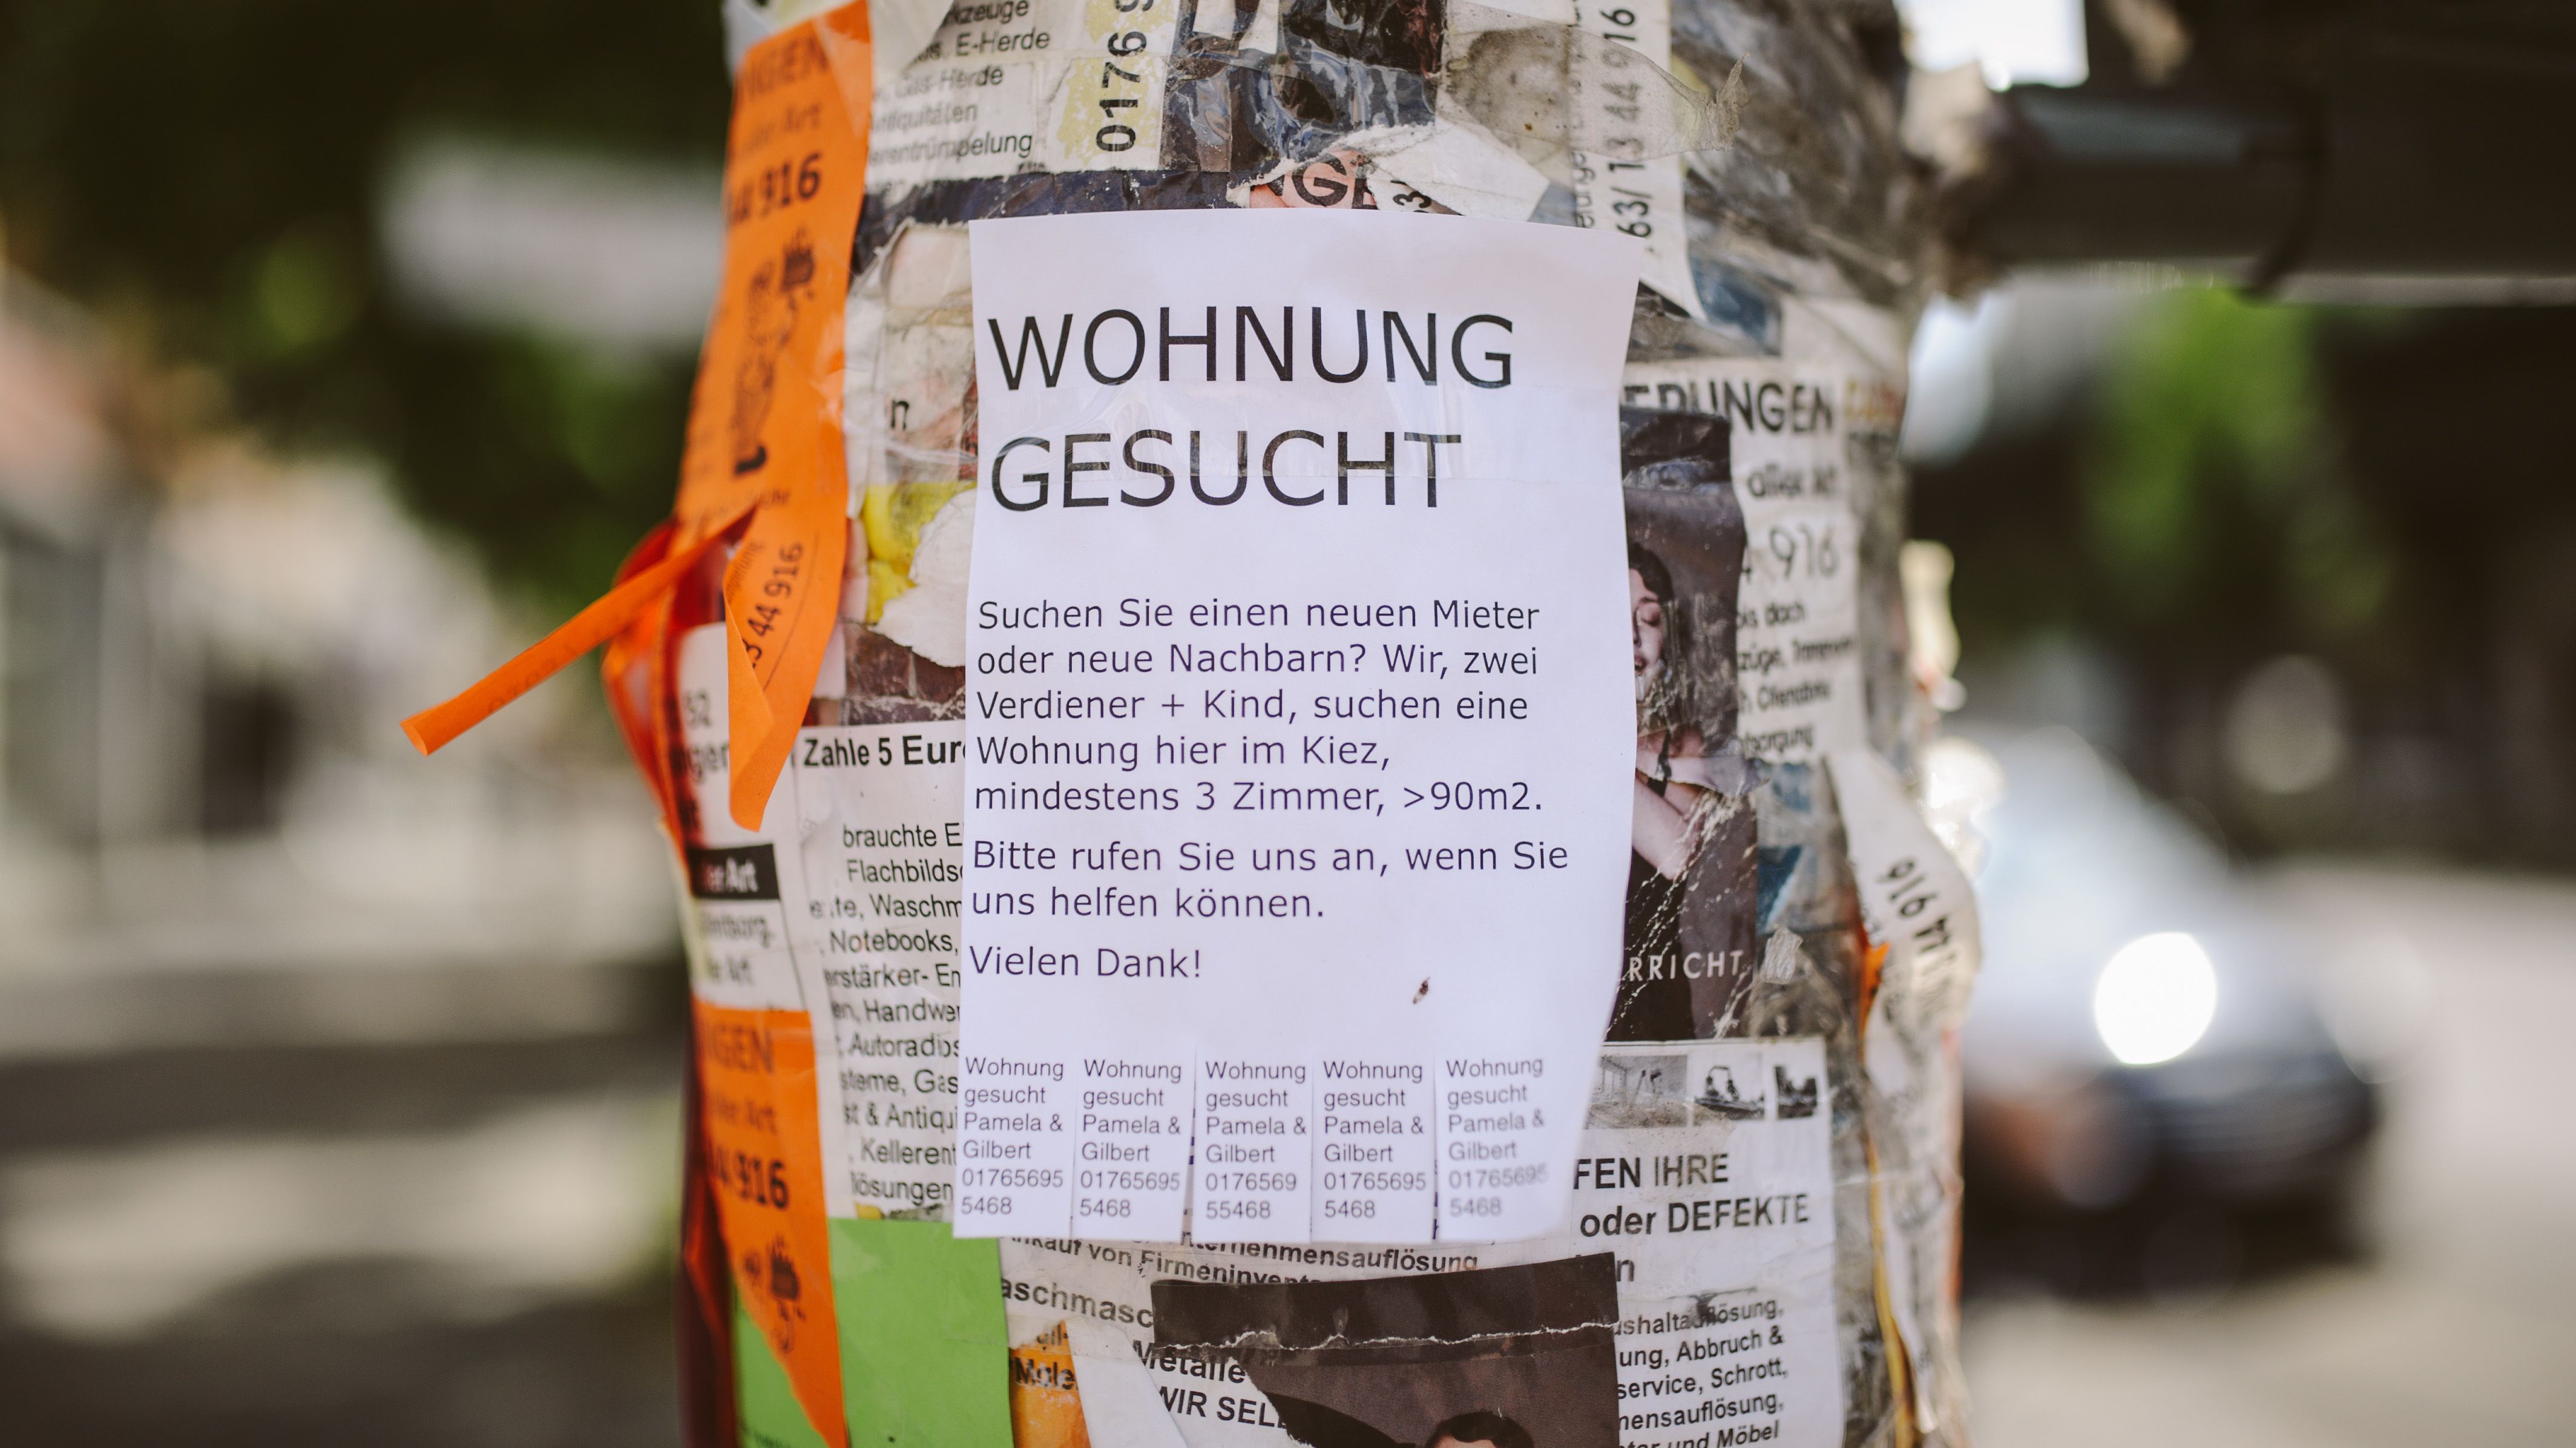 Wohnungsgesuch hängt an einem Laternenmast in Berlin